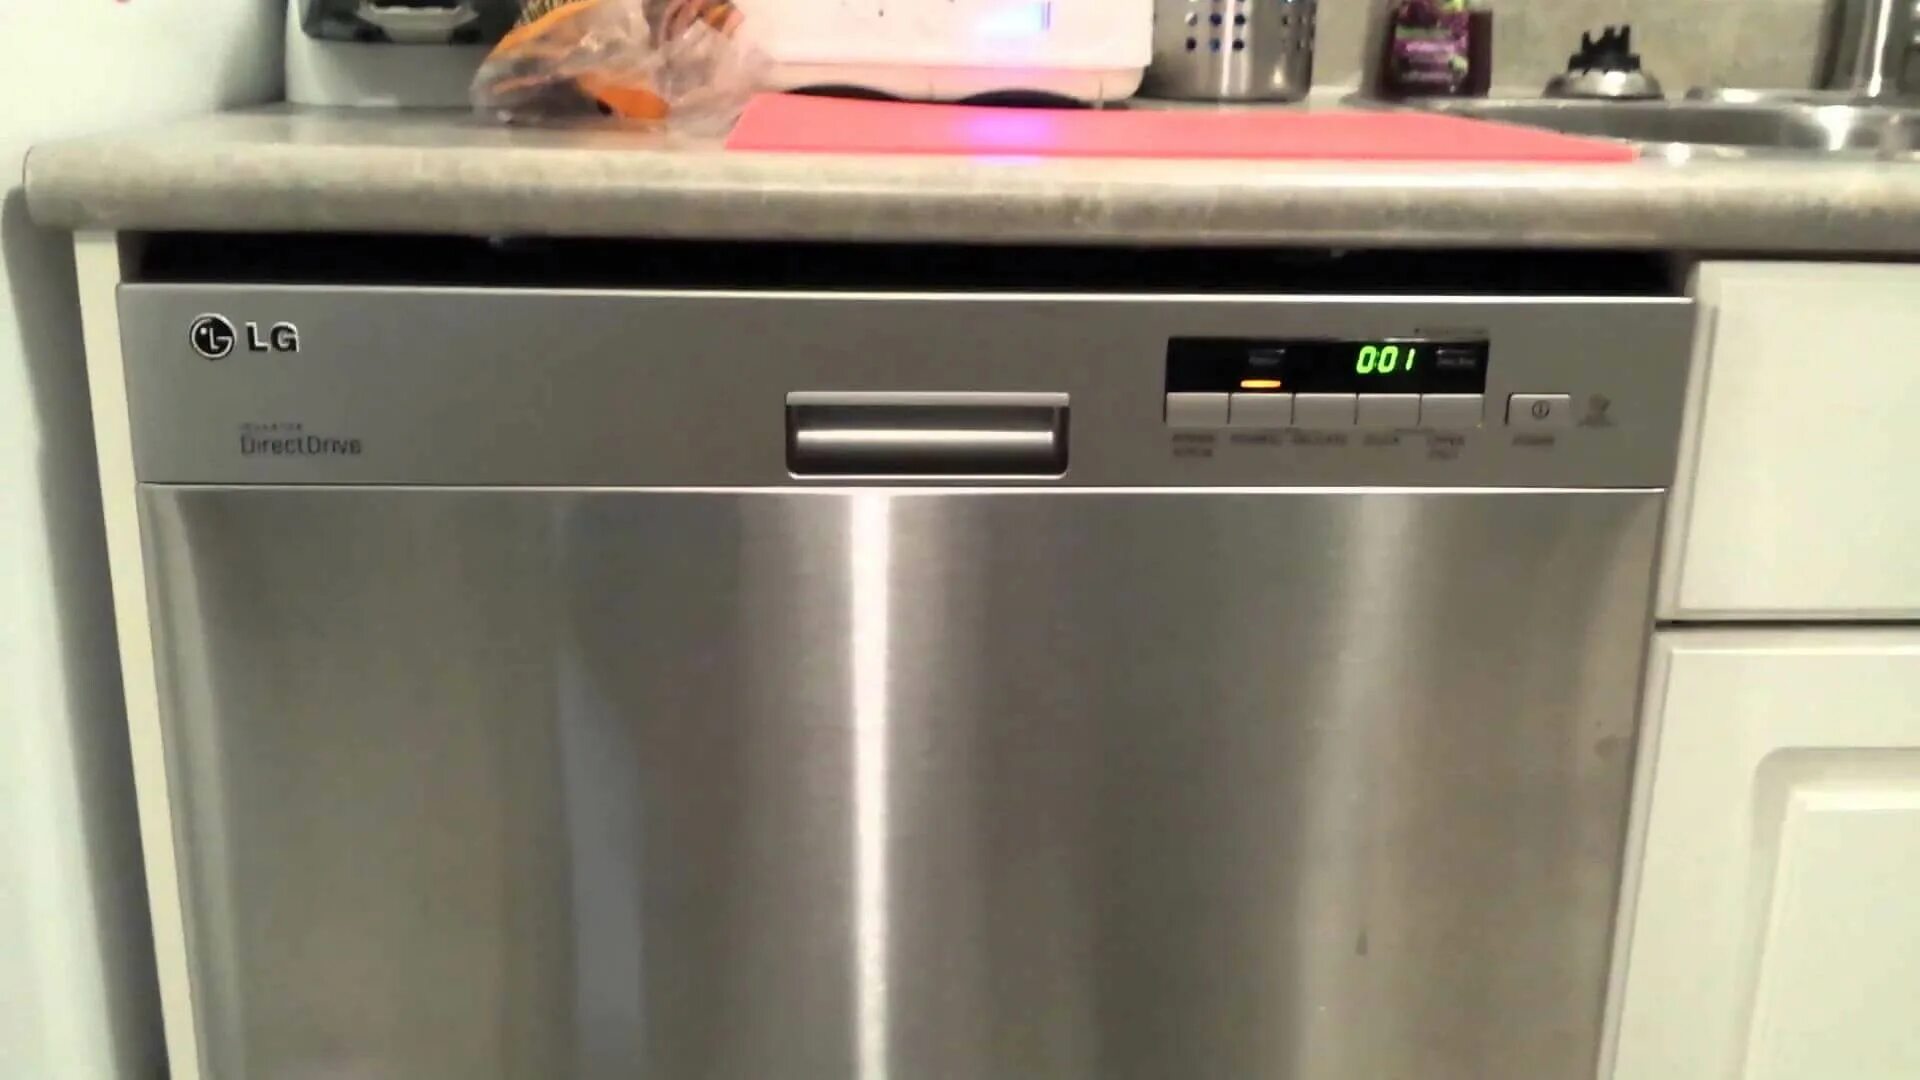 Посудомоечная машина LG D-1452wf. Ldt5665bd LG Dishwasher Price. Старая посудомойка LG. Посудомоечная машина LG табло. Окпд посудомоечная машина